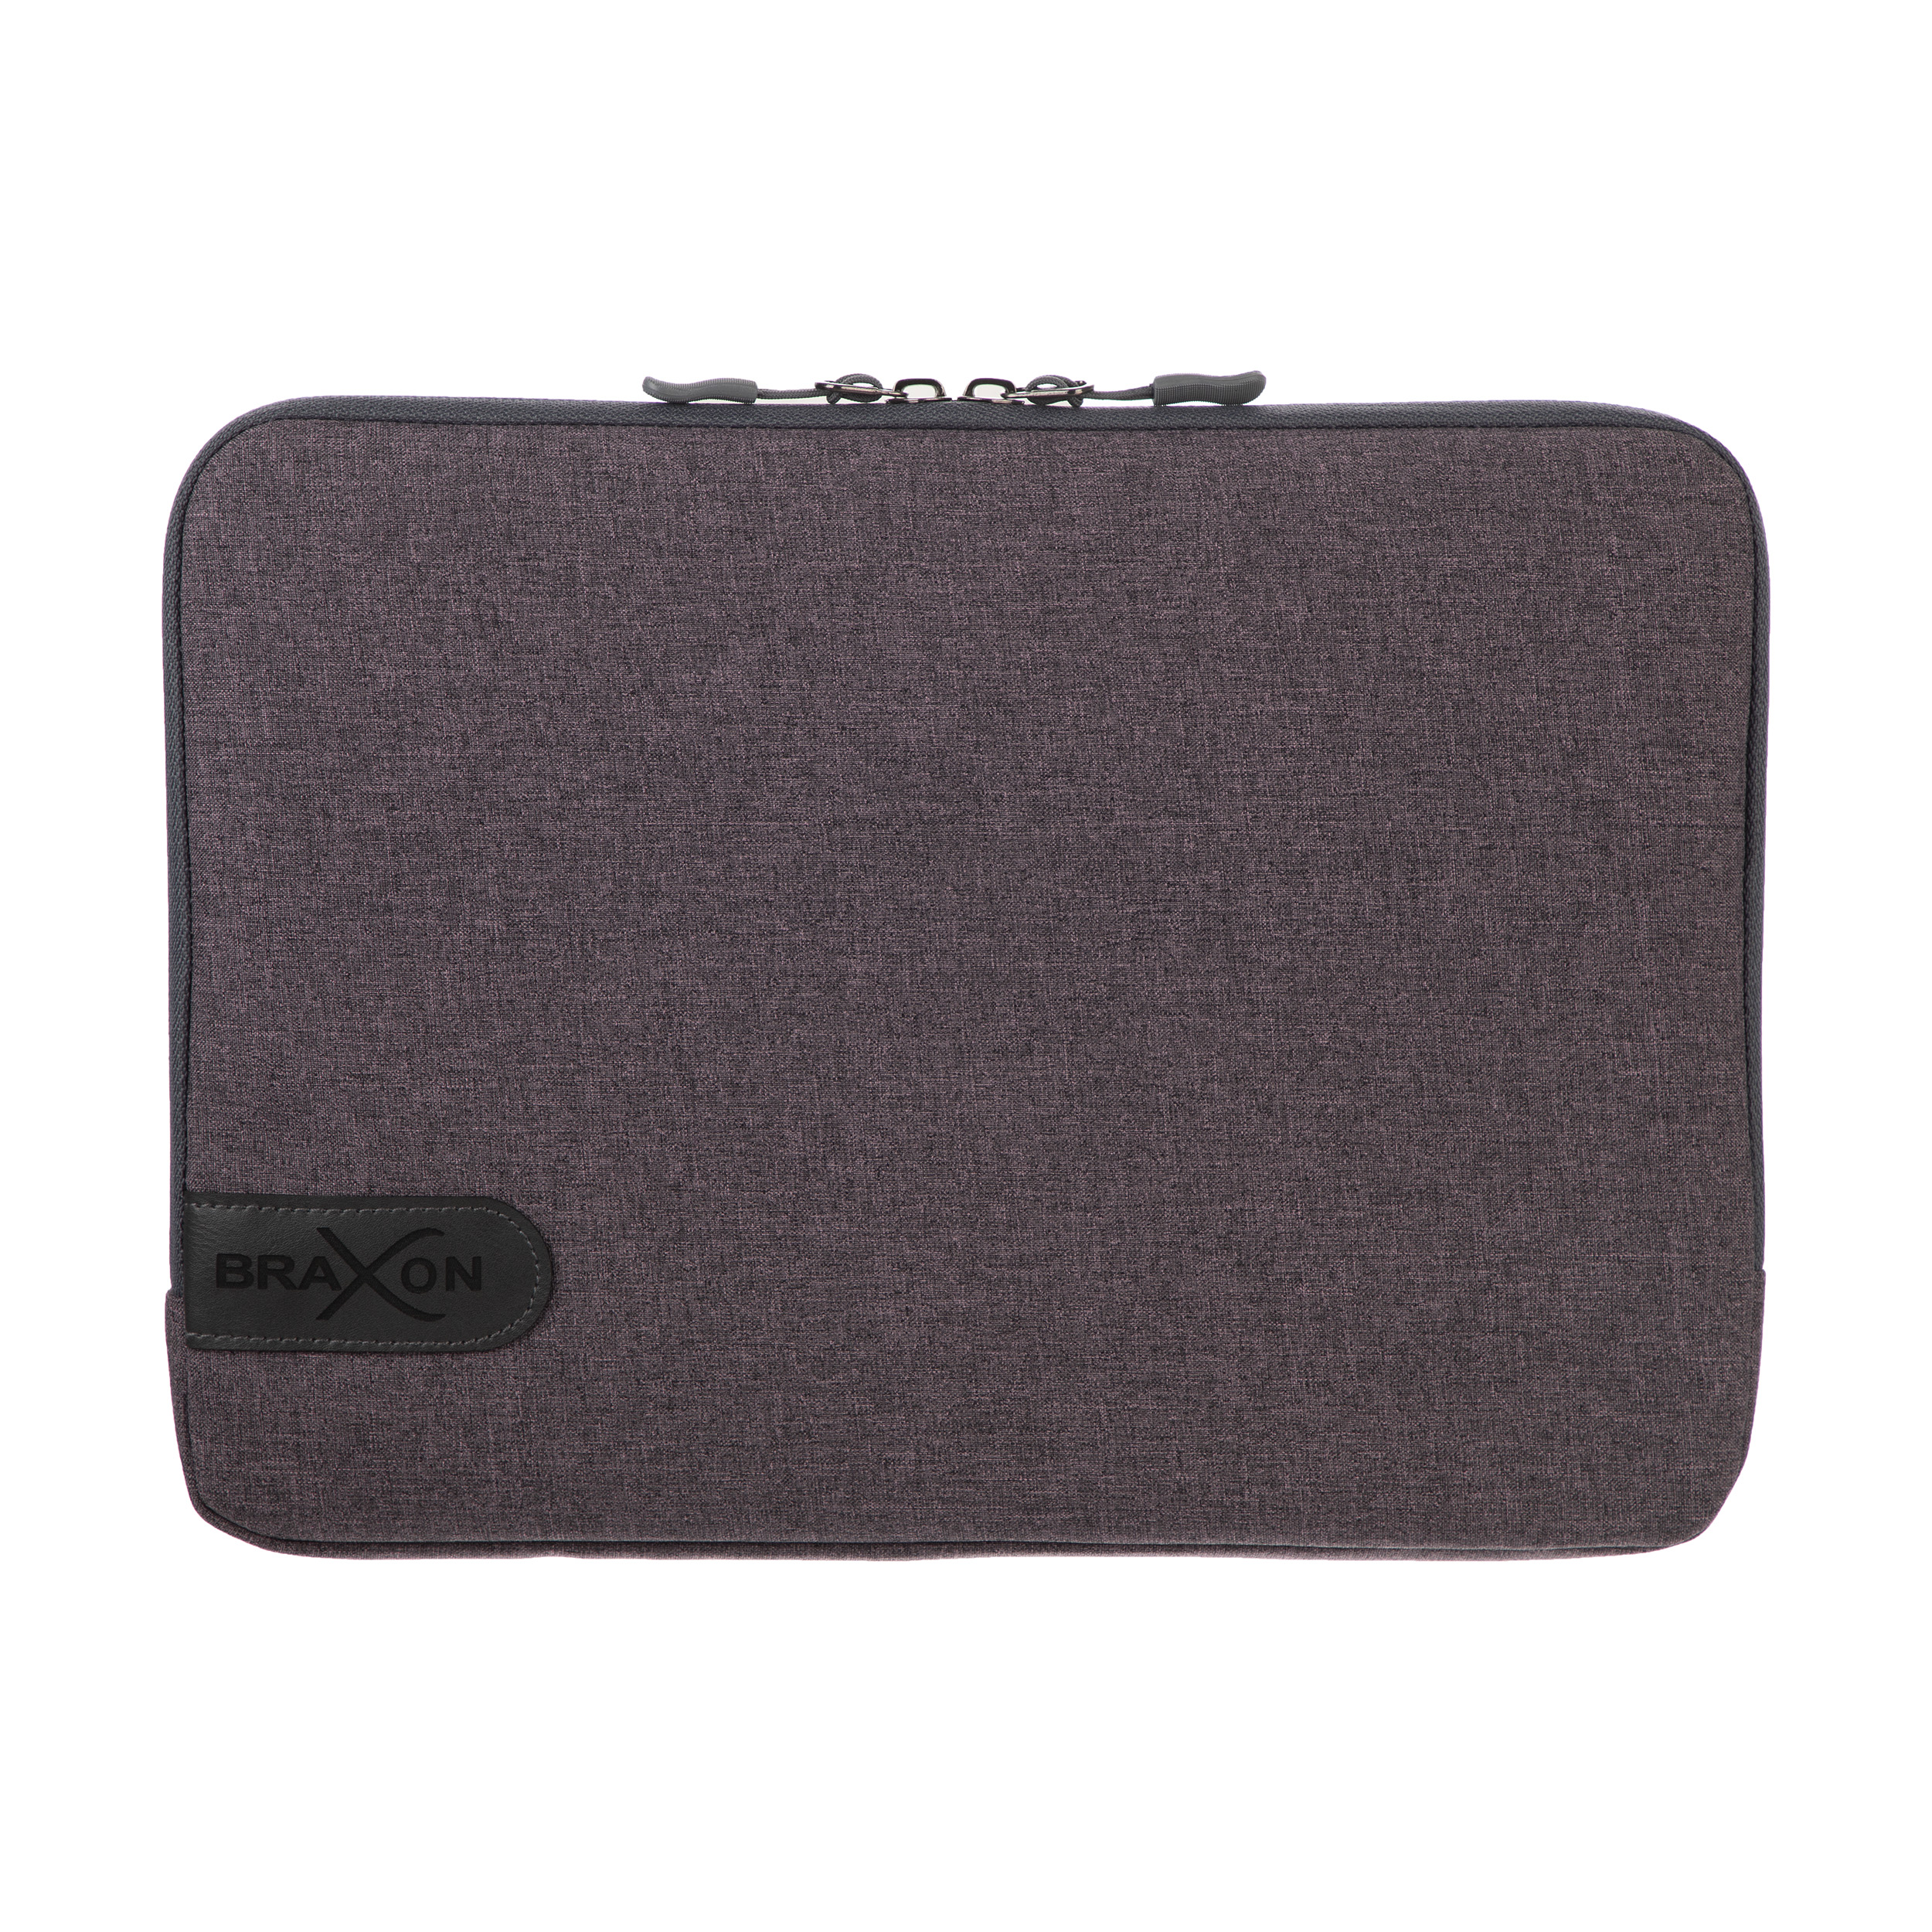 کاور لپ تاپ اس.واندر مدل Braxon-3 مناسب برای لپ تاپ 13 اینچی